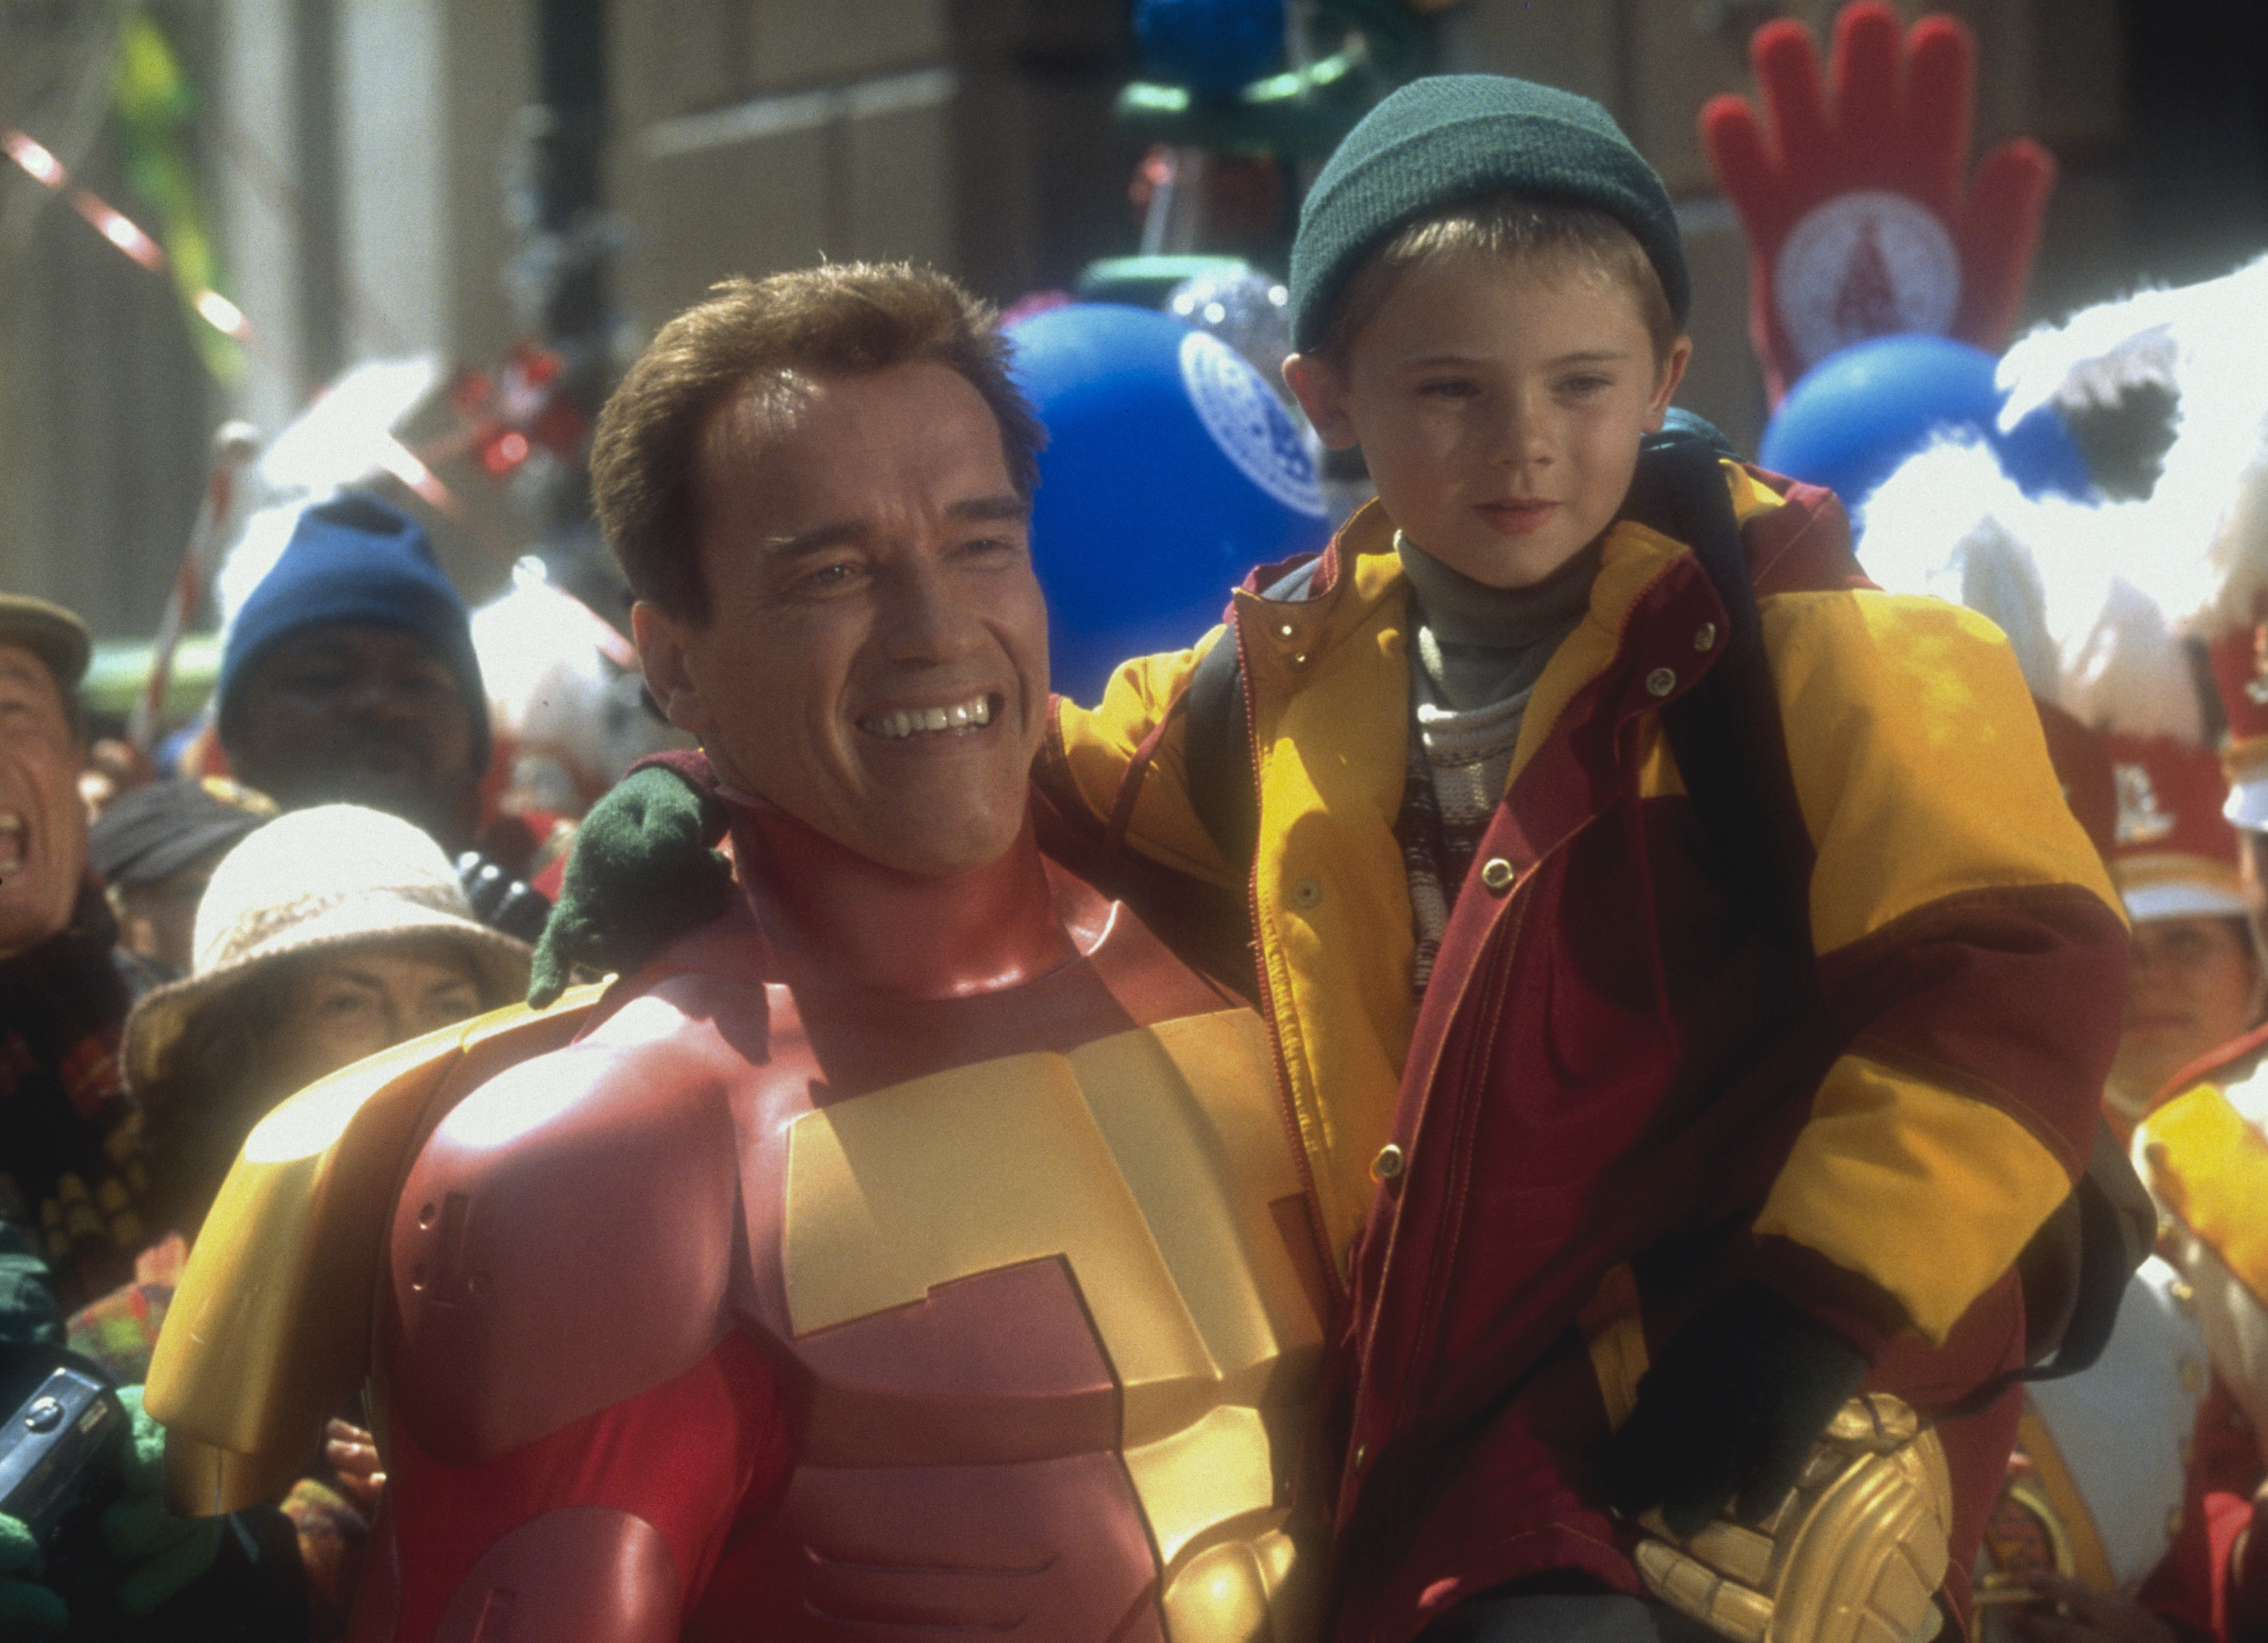 Schauspieler Arnold Schwarzenegger mit dem amerikanischen Schauspieler Jake Lloyd am Set des Films "Jingle All the Way", etwa im Januar 1996 | Quelle: Getty Images